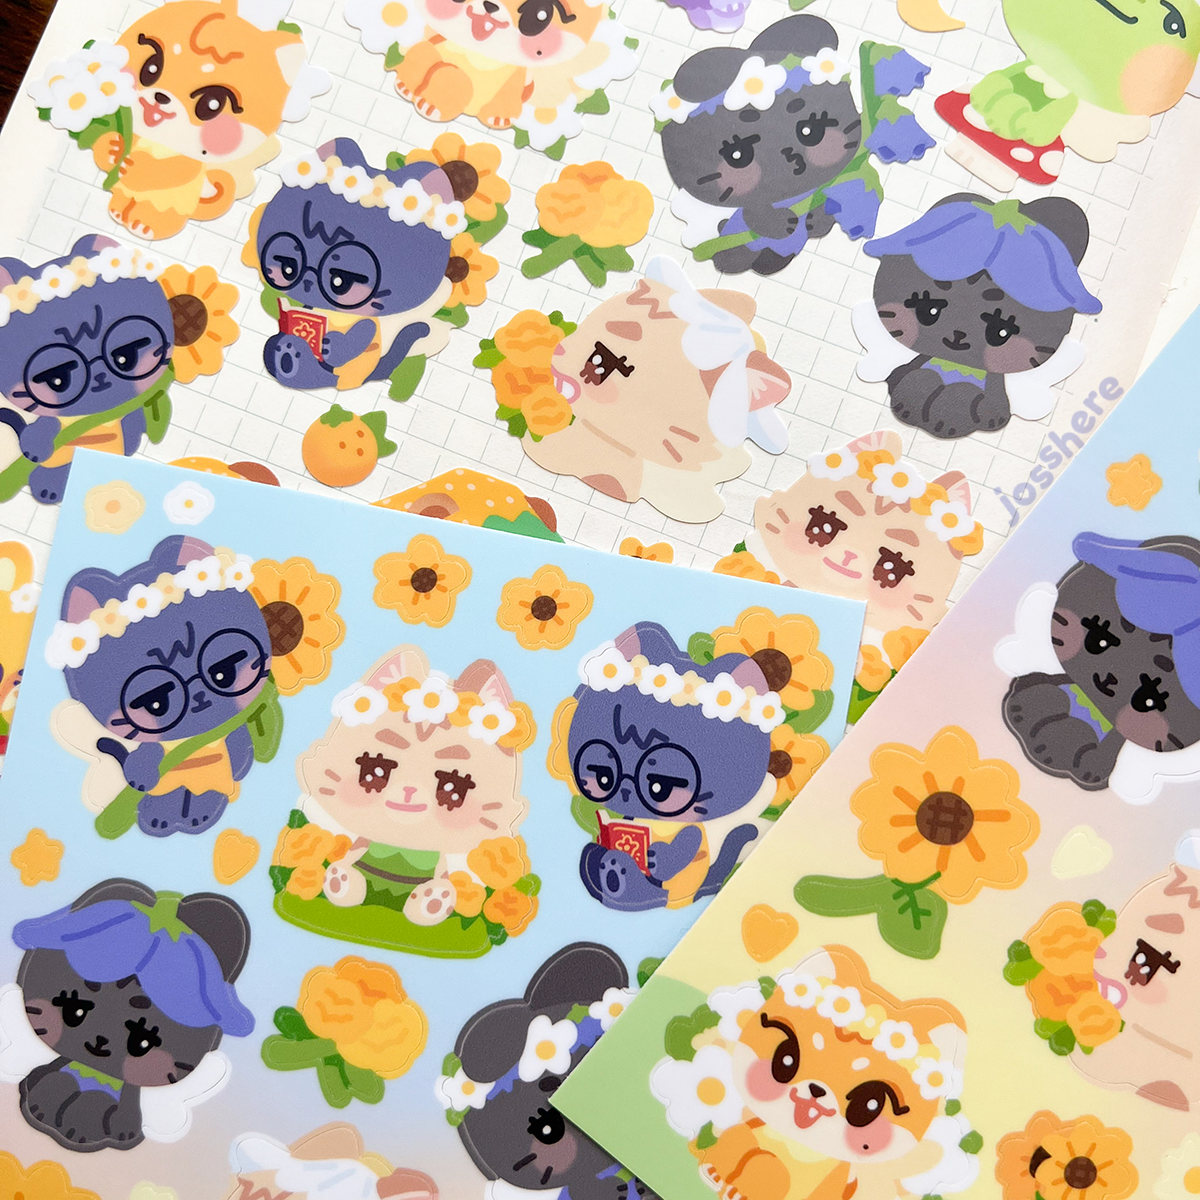 Flower Fairies 🌻 Sticker Sheet